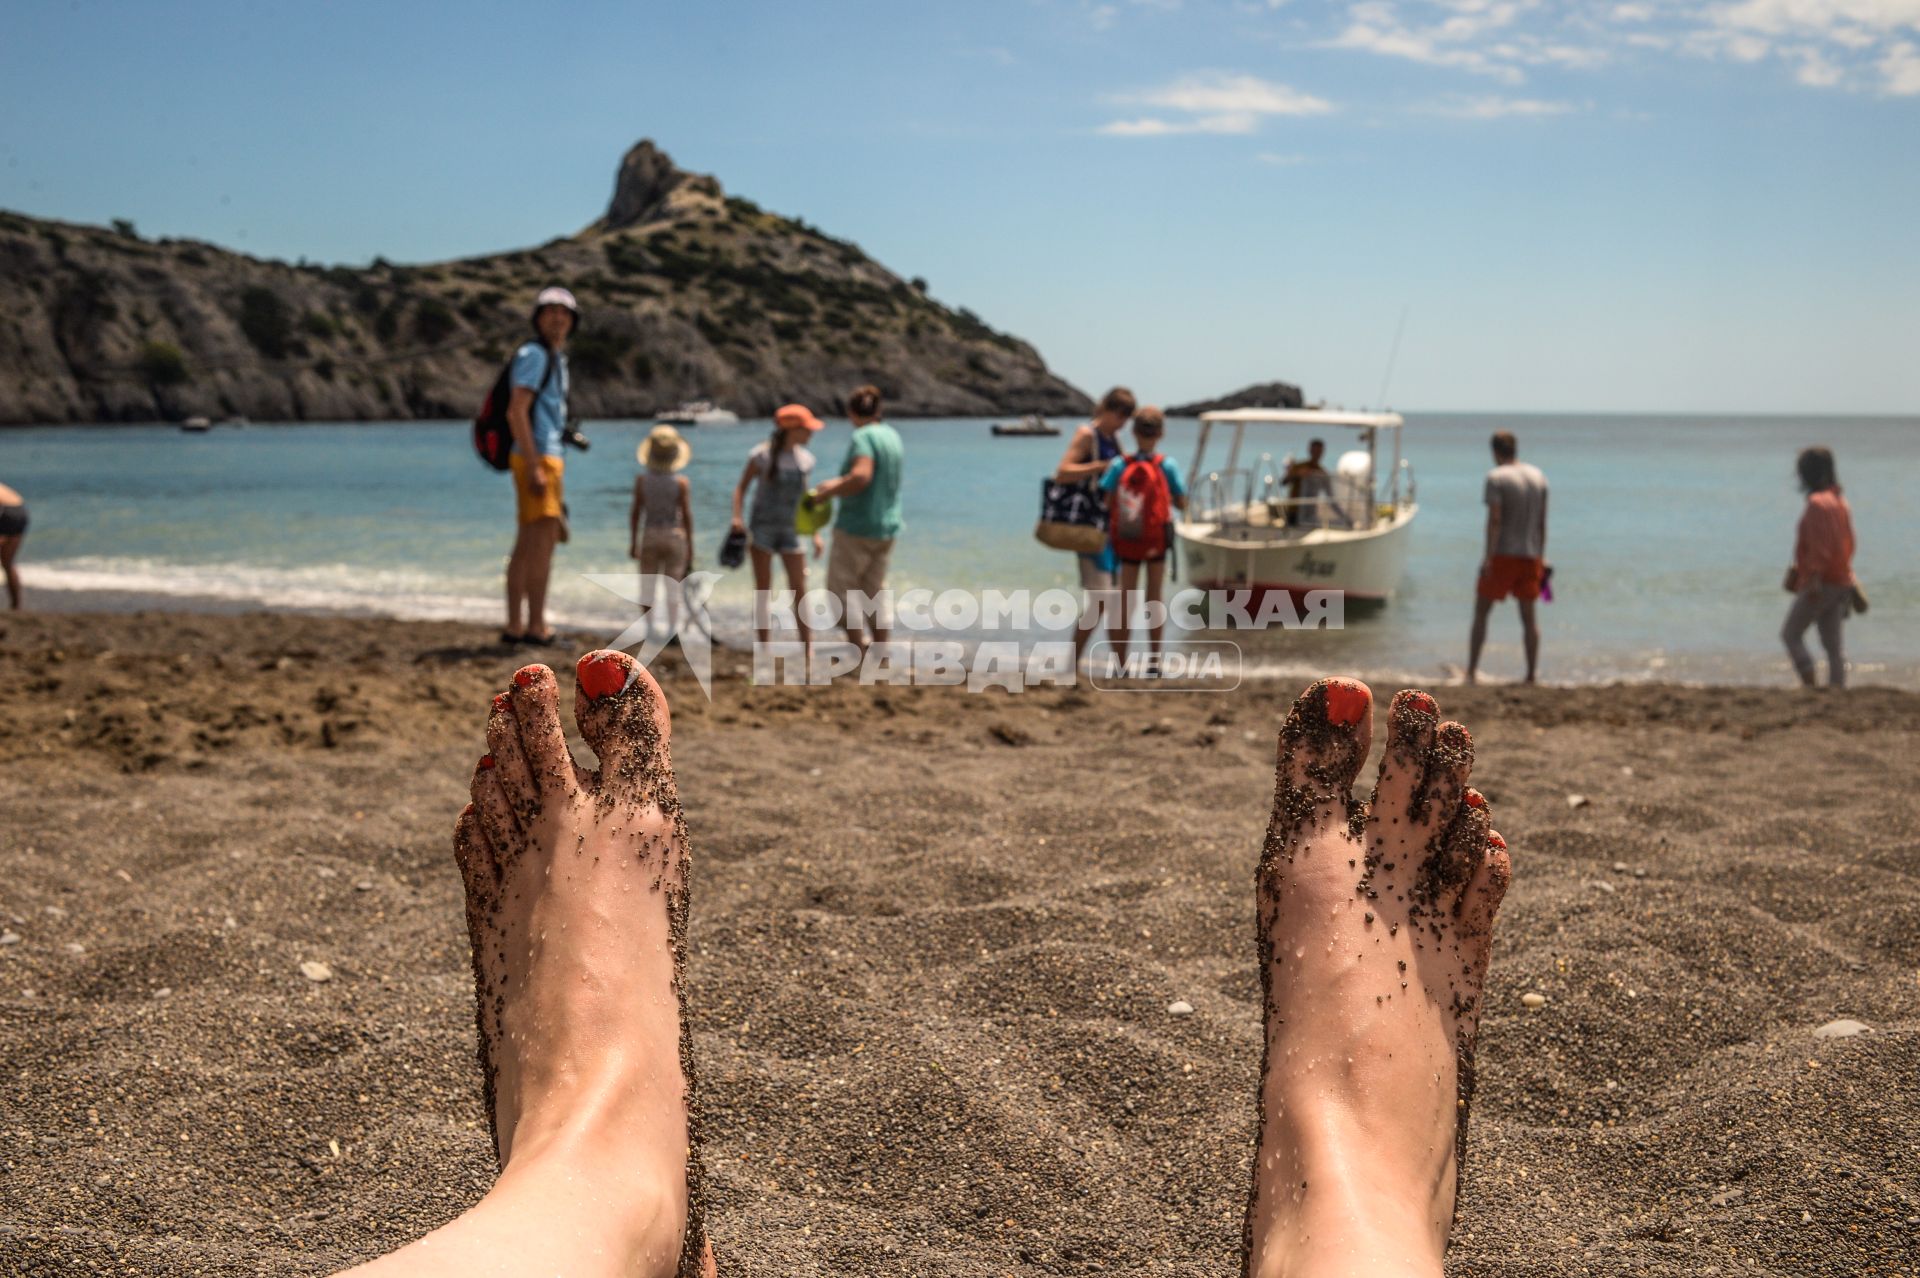 Крым, Новый Свет.  Отдыхающие загорают на песчаном пляже.